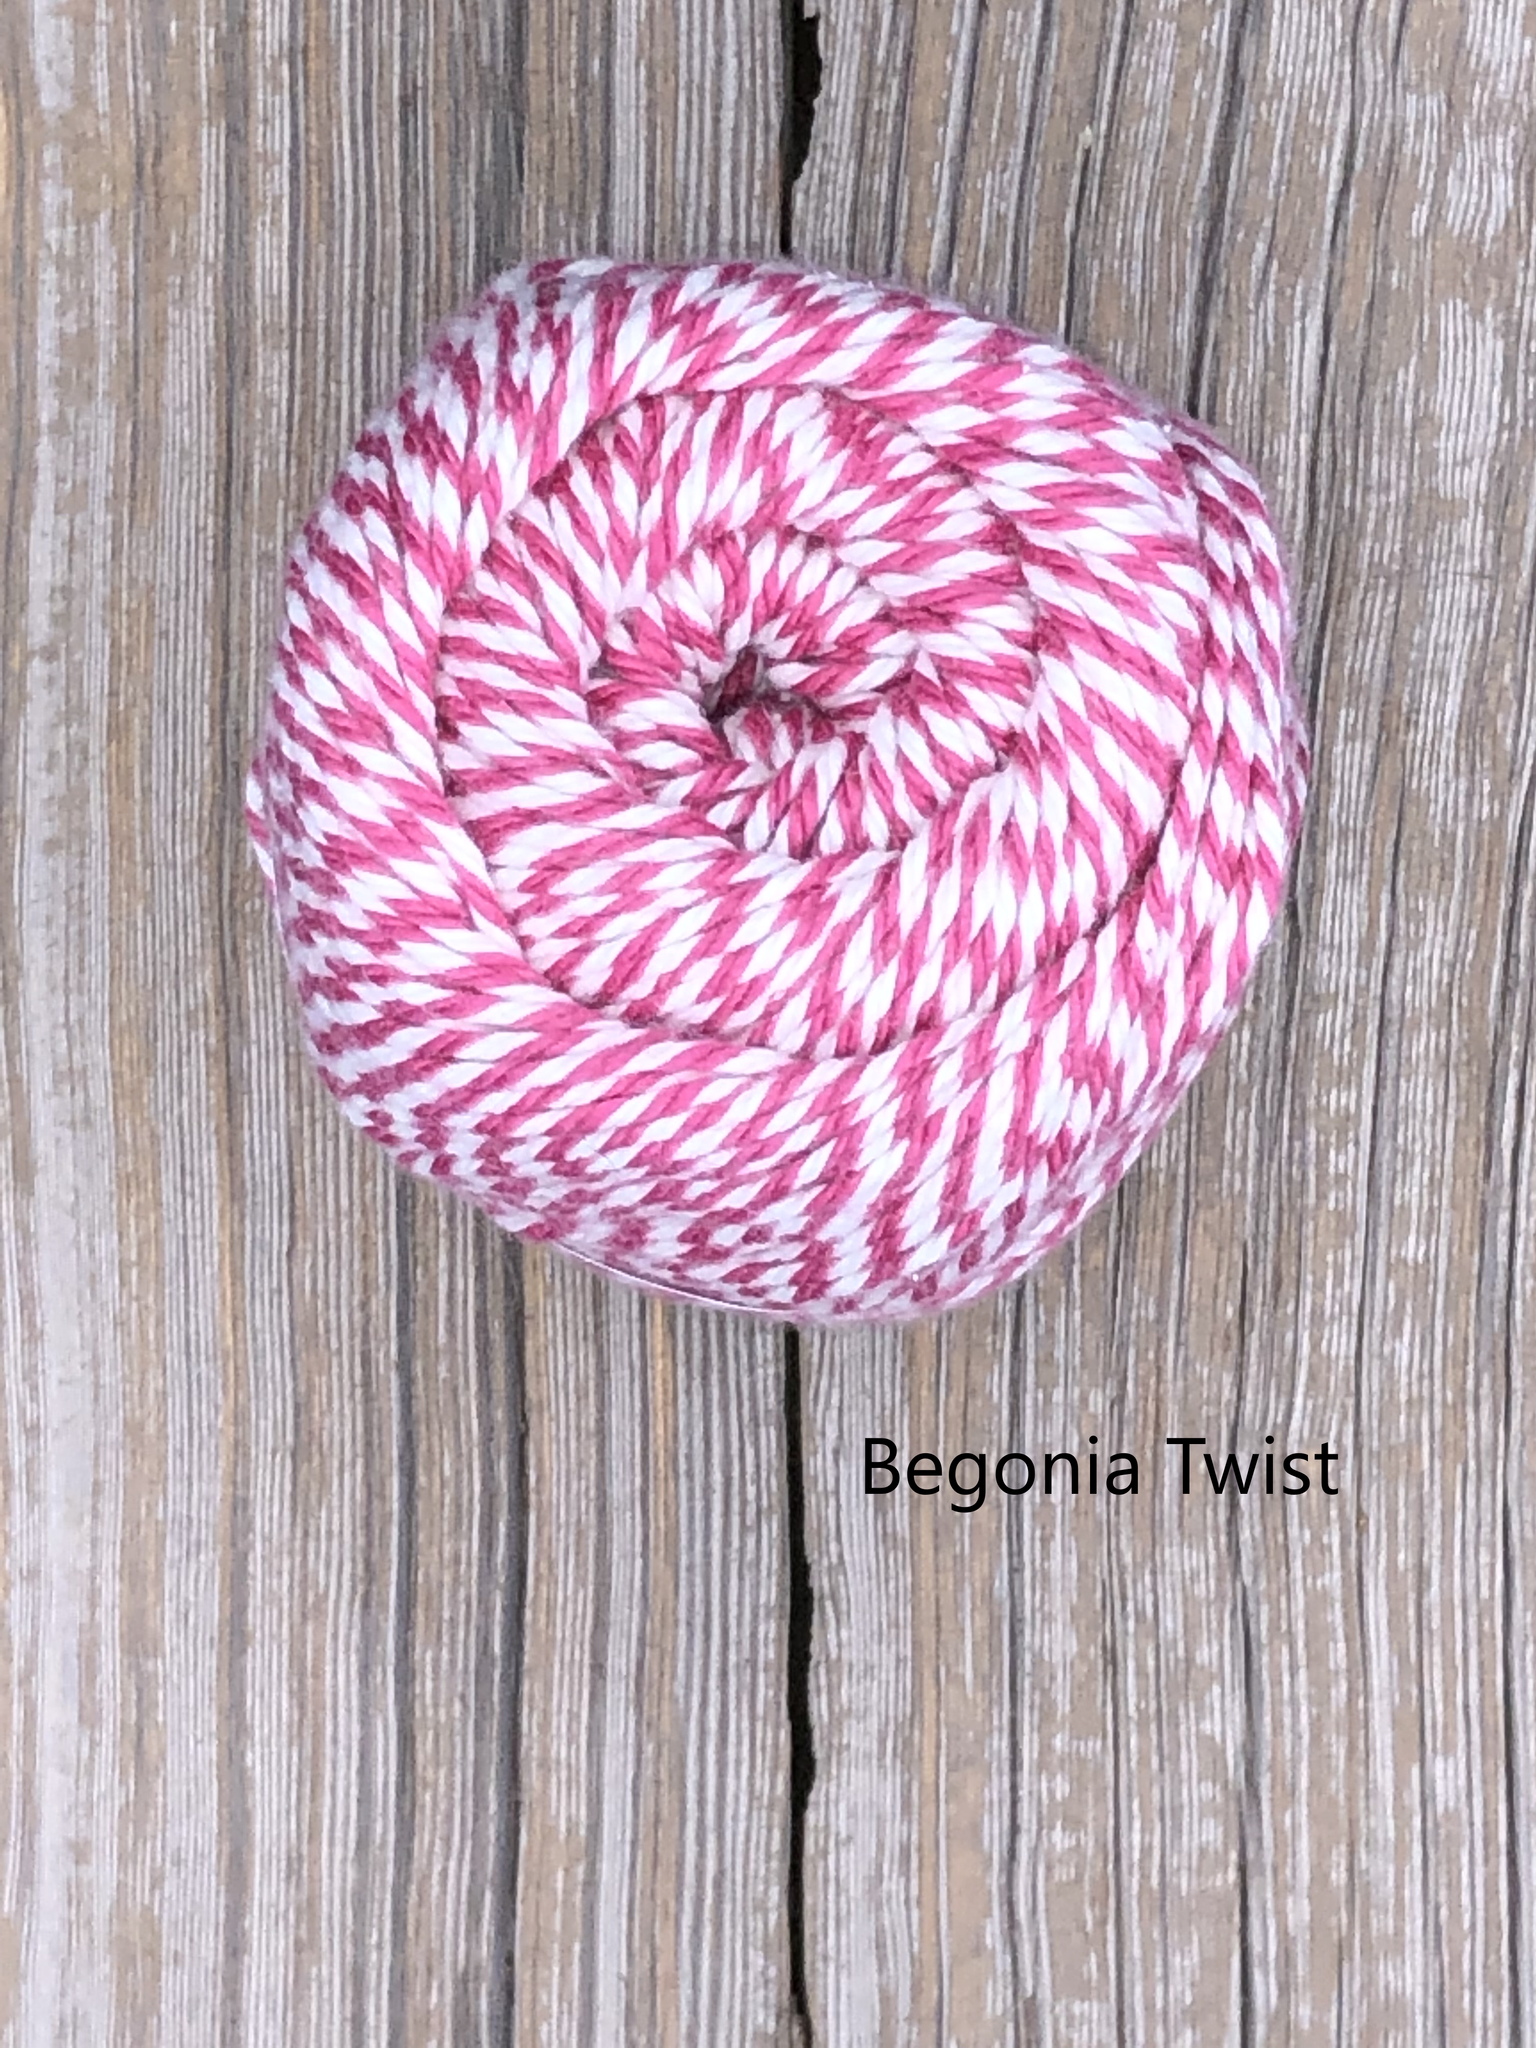 New Knit Picks Dishie Twist – Polly Knitter